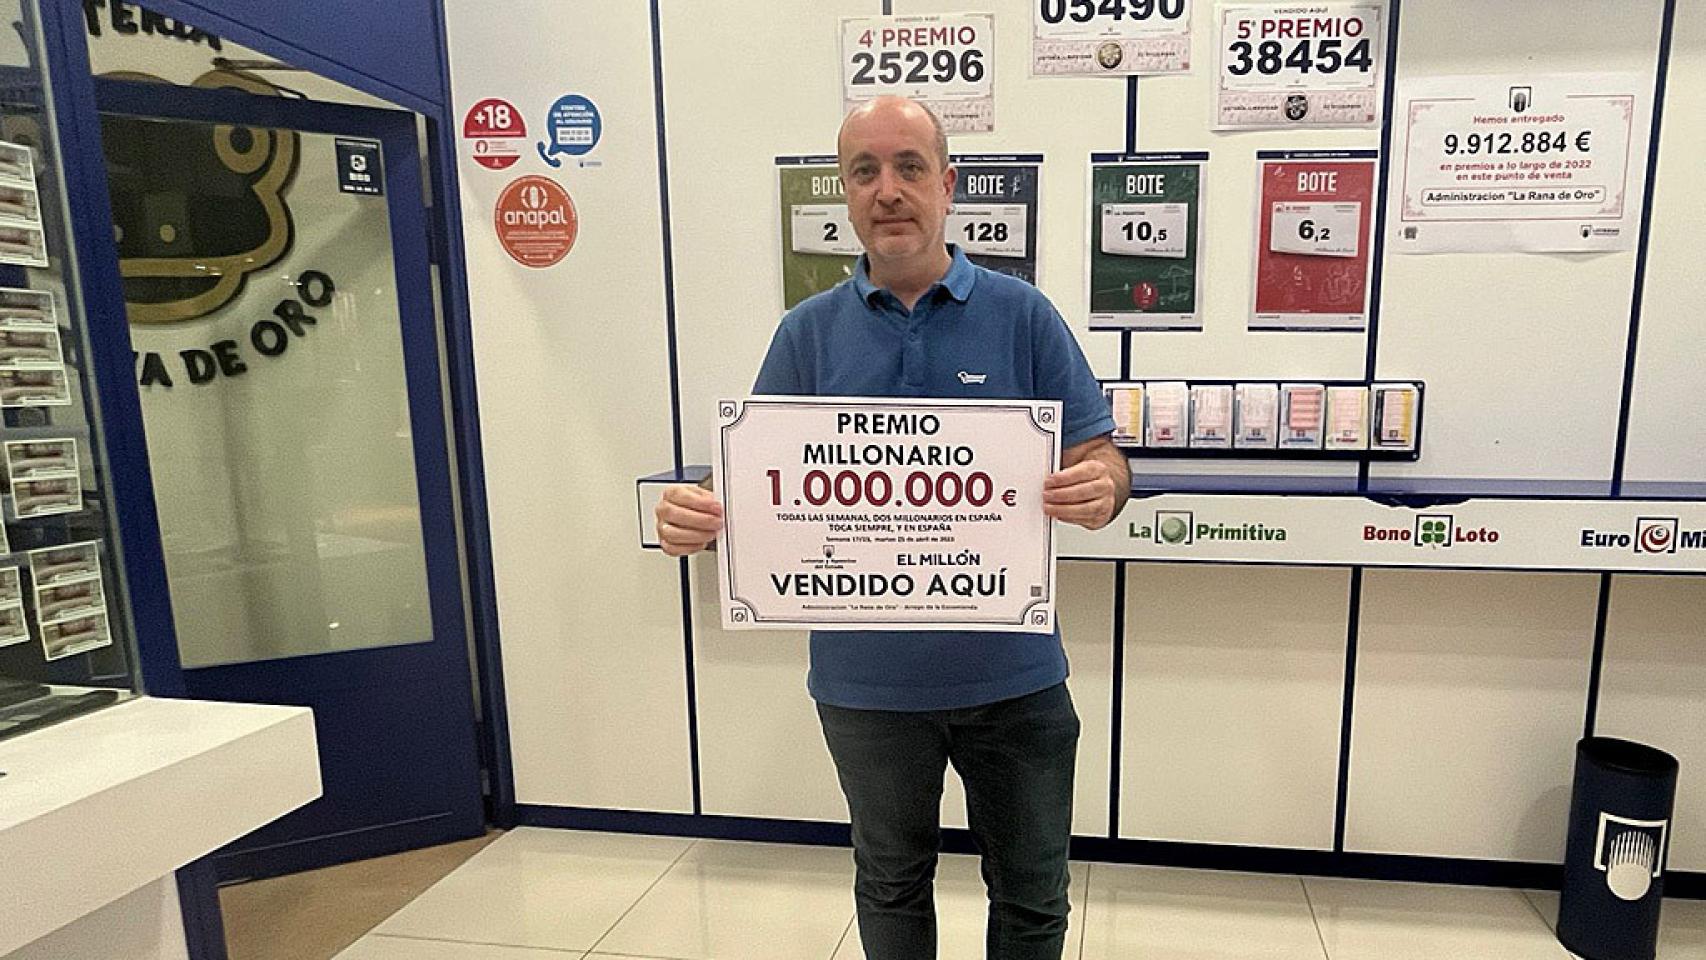 Luis Vázquez, dueño de la administración de loterías La Rana de Oro en Río Shopping